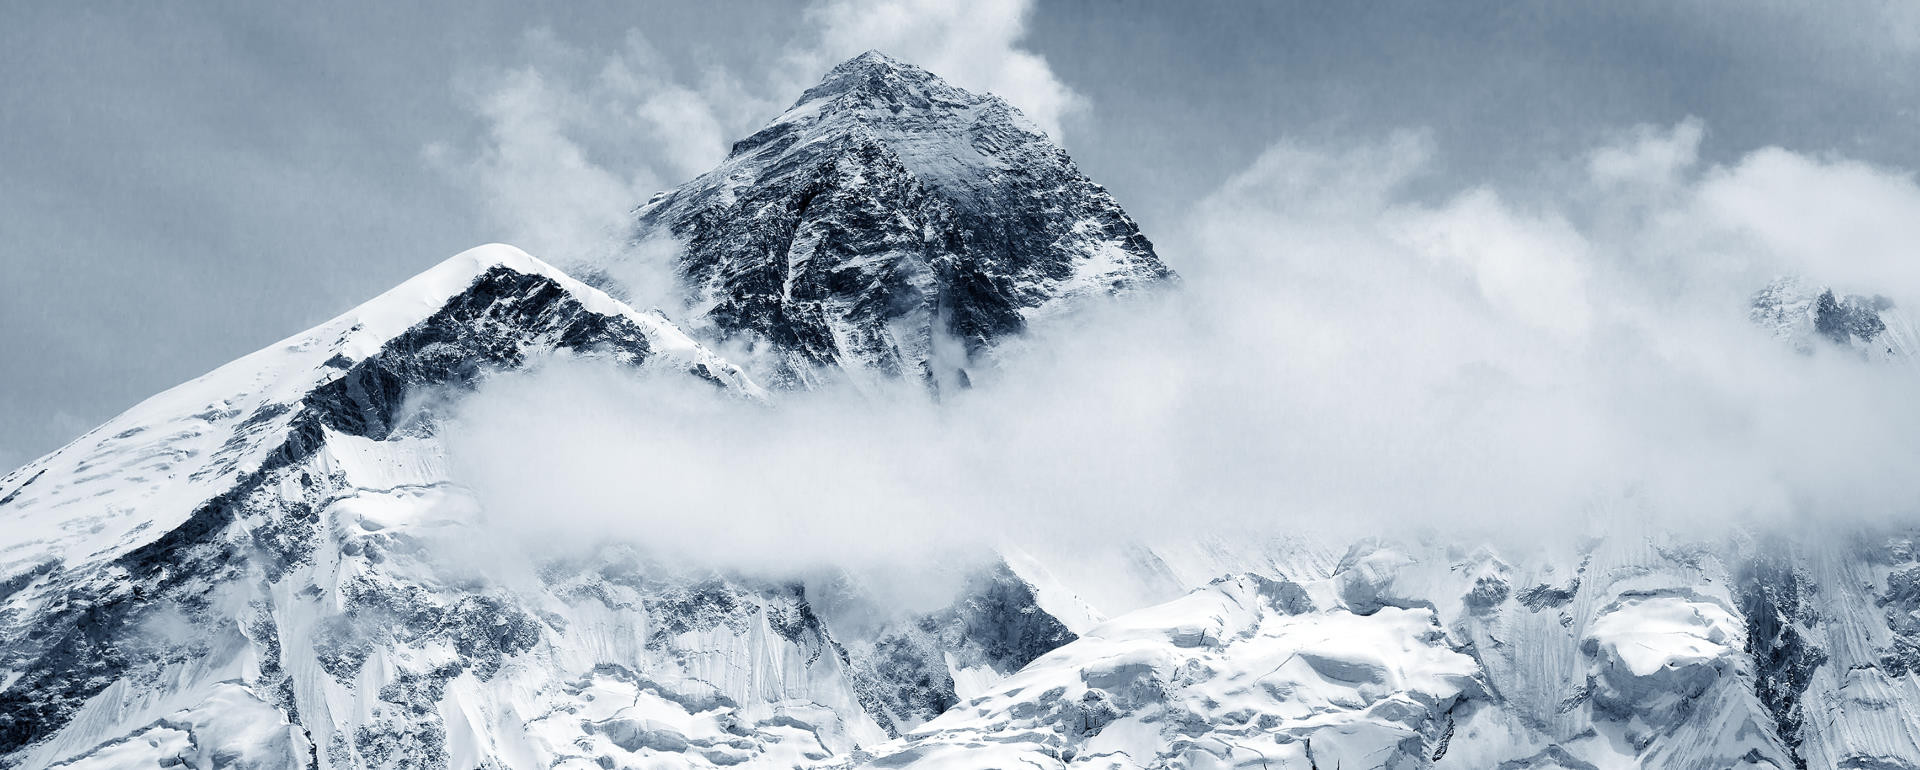 Literatur der Nacht: In eisige Höhen. Das Drama am Mount Everest